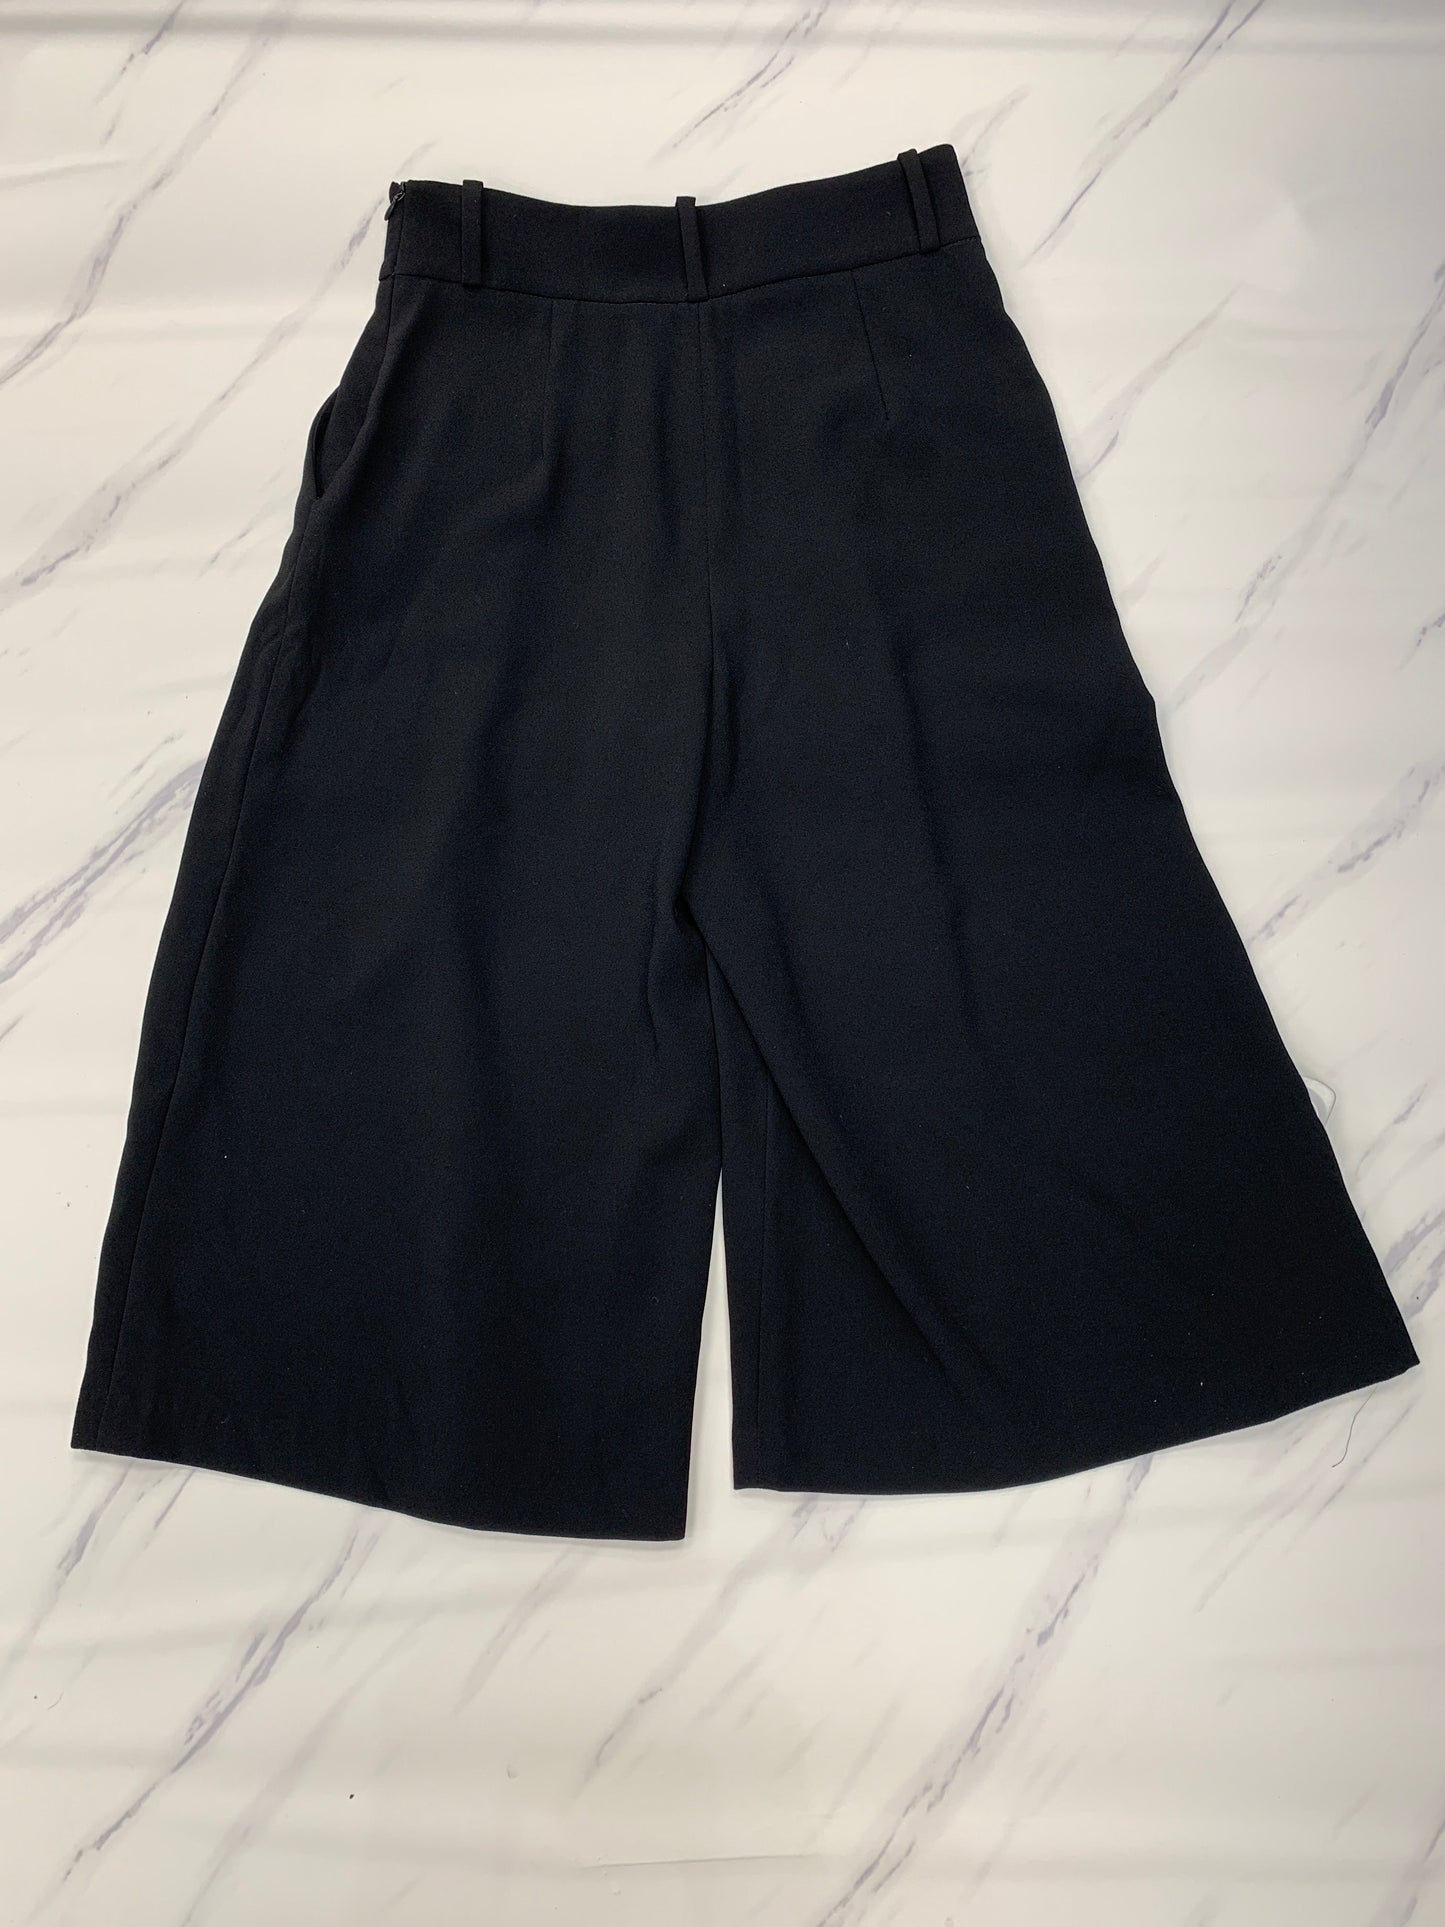 Black Pants Dress Zara, Size S